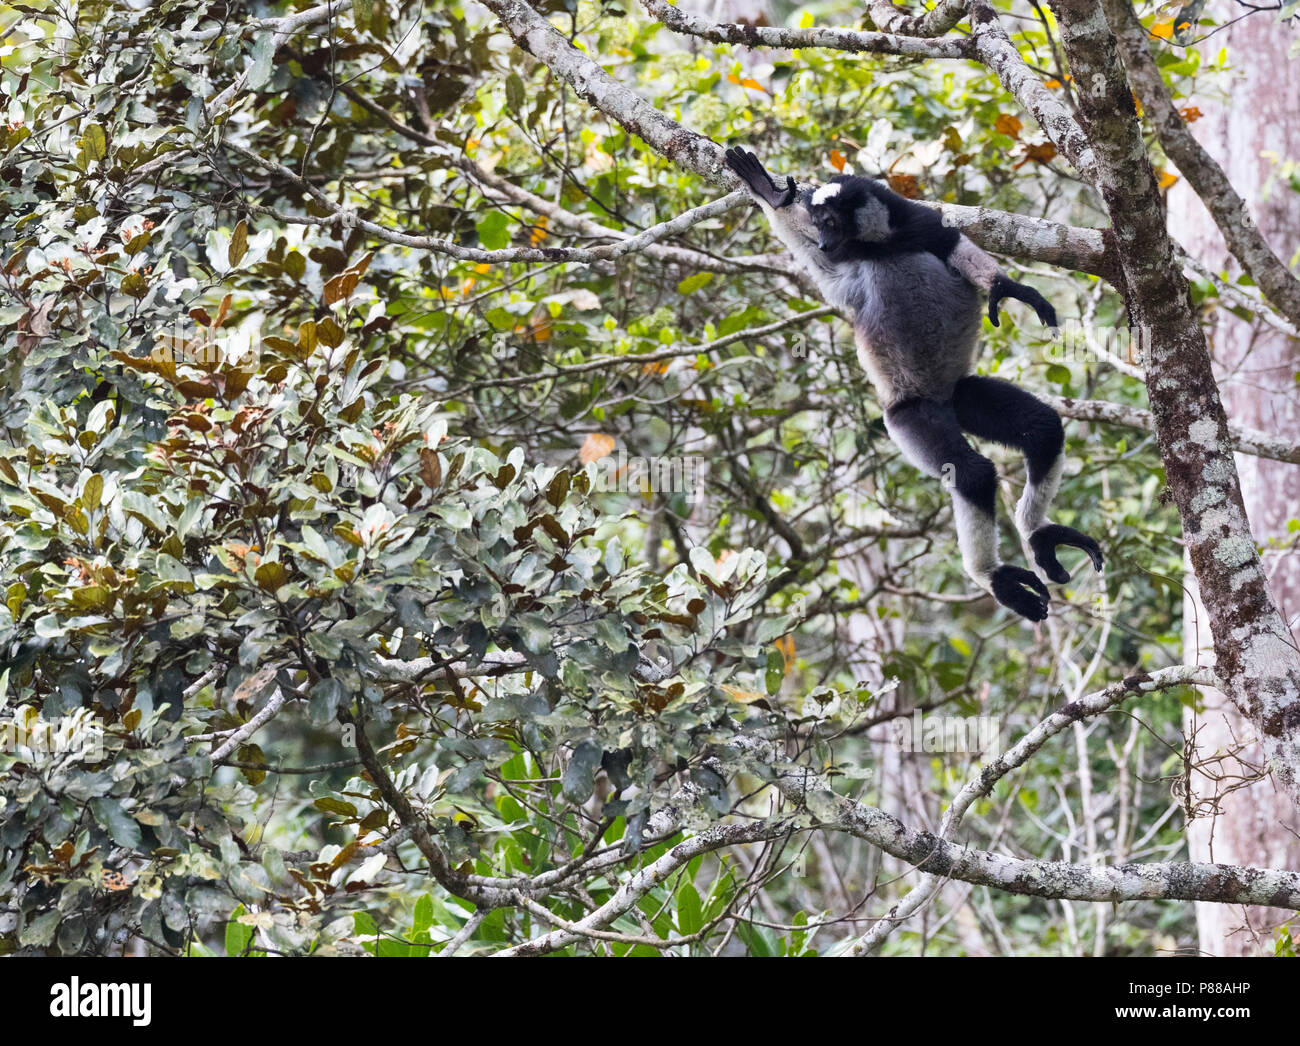 ; Springende Indri Indri Indri Indri (Springen) in perinet, Madagaskar Stockfoto